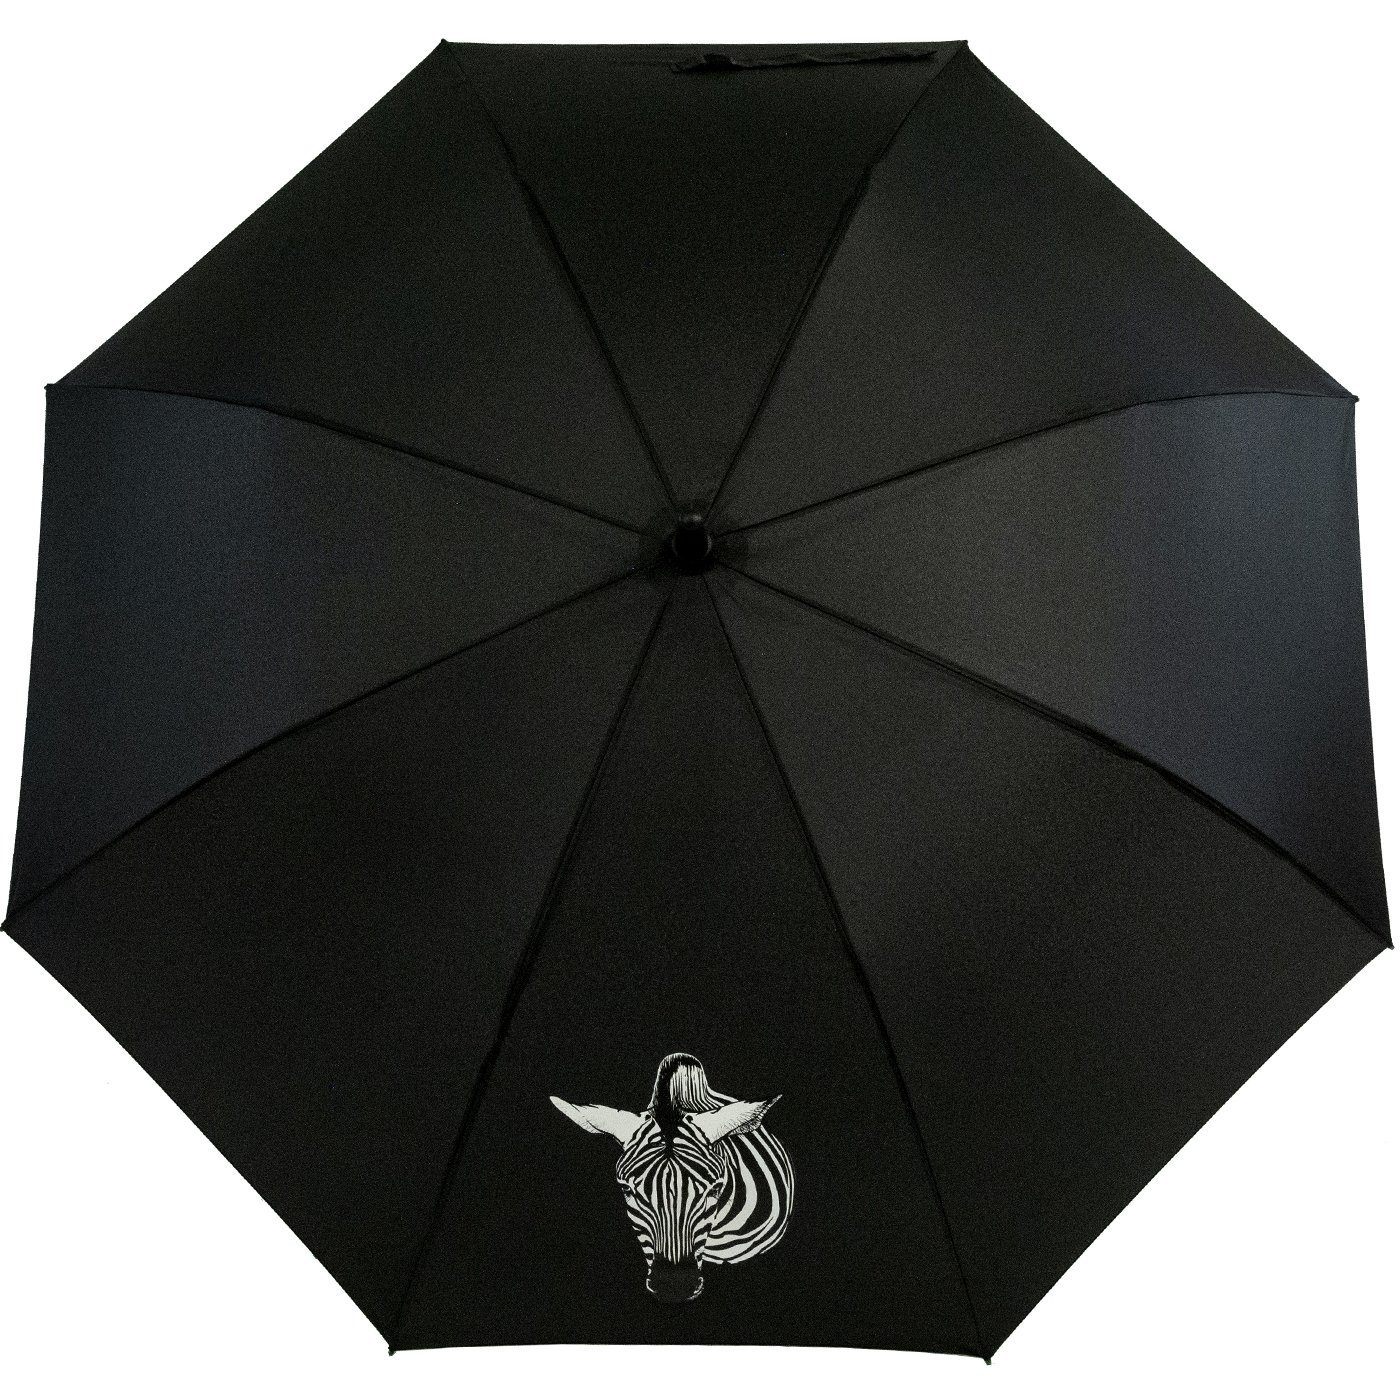 und Nässe Zebra Auf-Automatik Langregenschirm Farbwechsel Wow-Effekt, Damen-Regenschirm mit - Impliva Wetprint bei